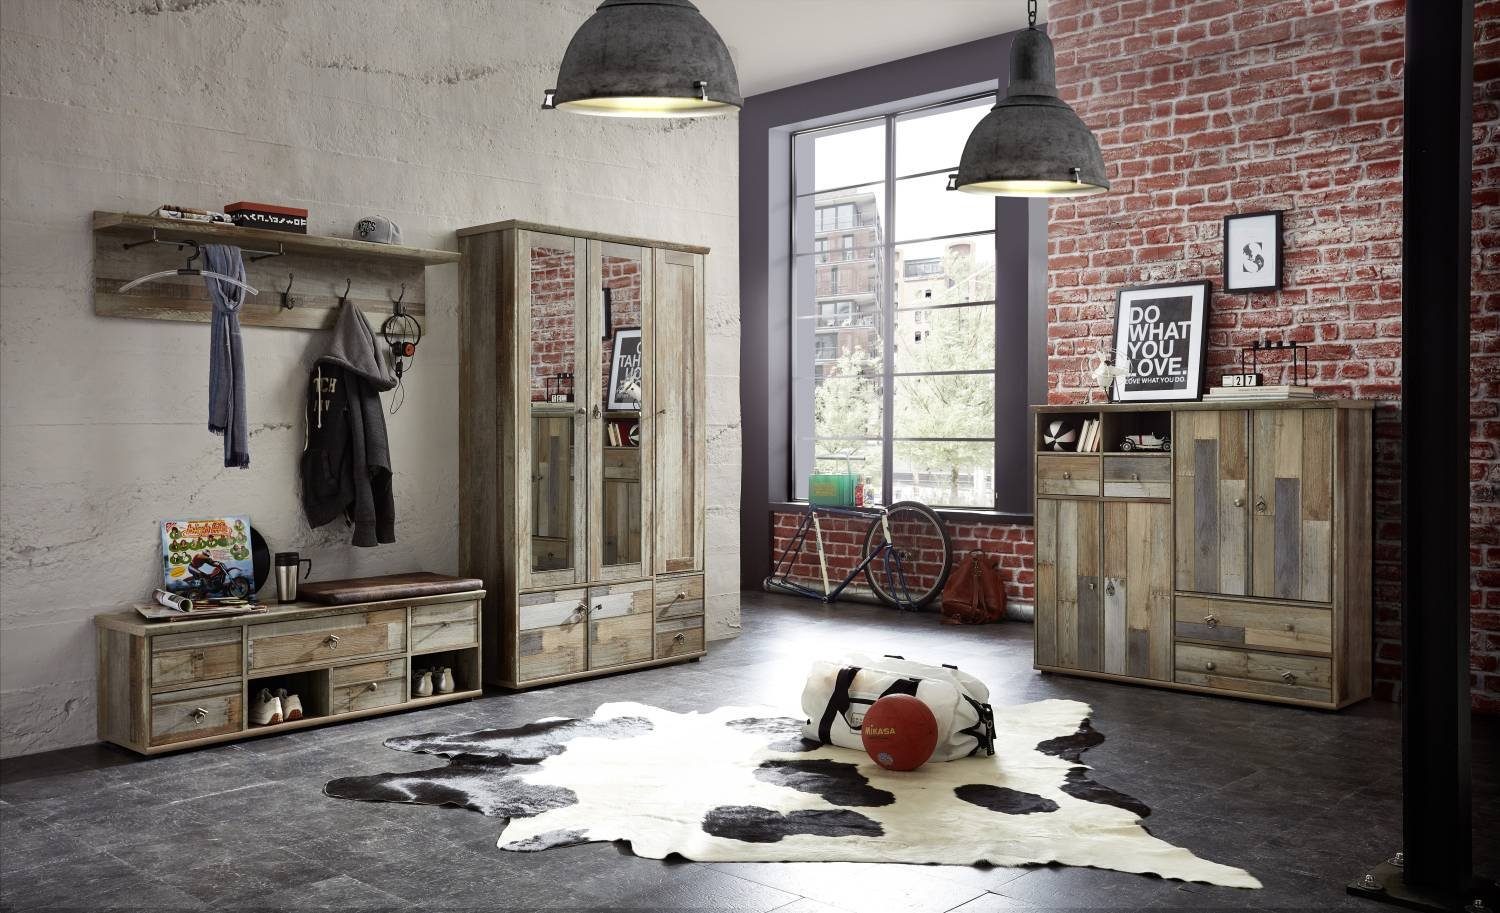 Innostyle Kleiderschrank Garderobenschrank mit 3-türig Driftwood - BONANZA Nachbildung Spiegel